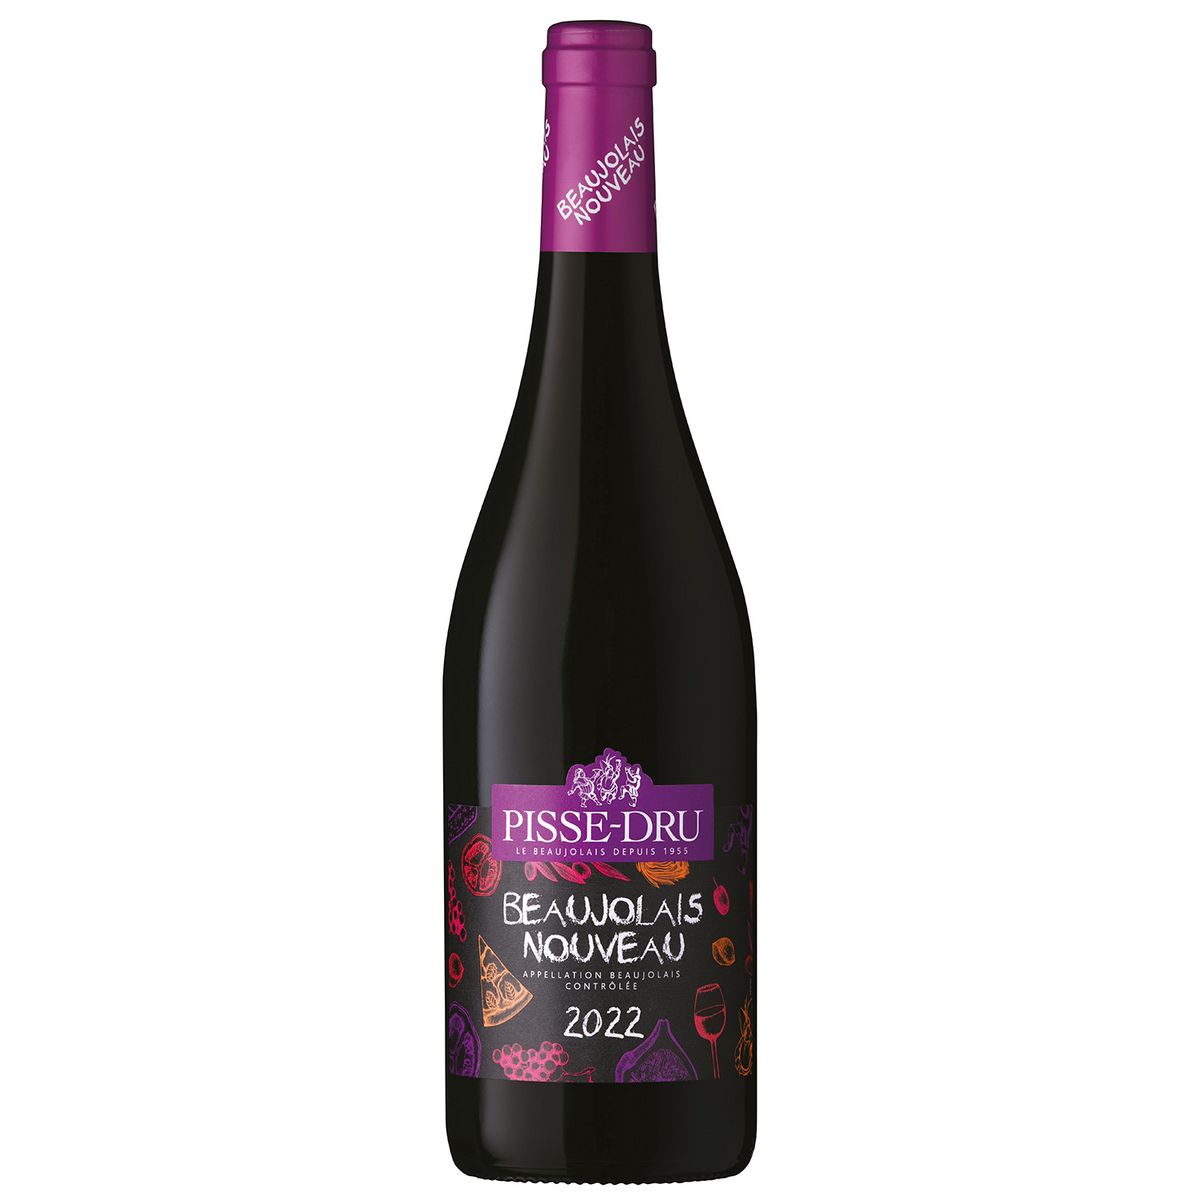 Vin rouge AOP Beaujolais nouveau Pisse Dru 2022 75cl